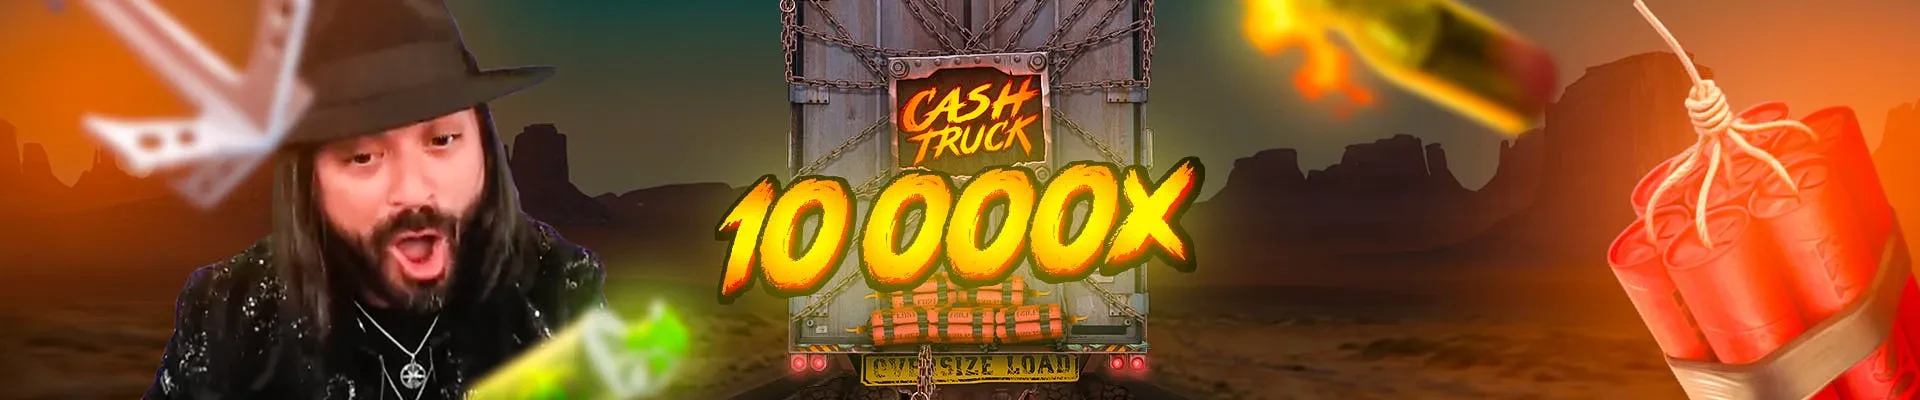 header big win roshtein x10 000 cash truck